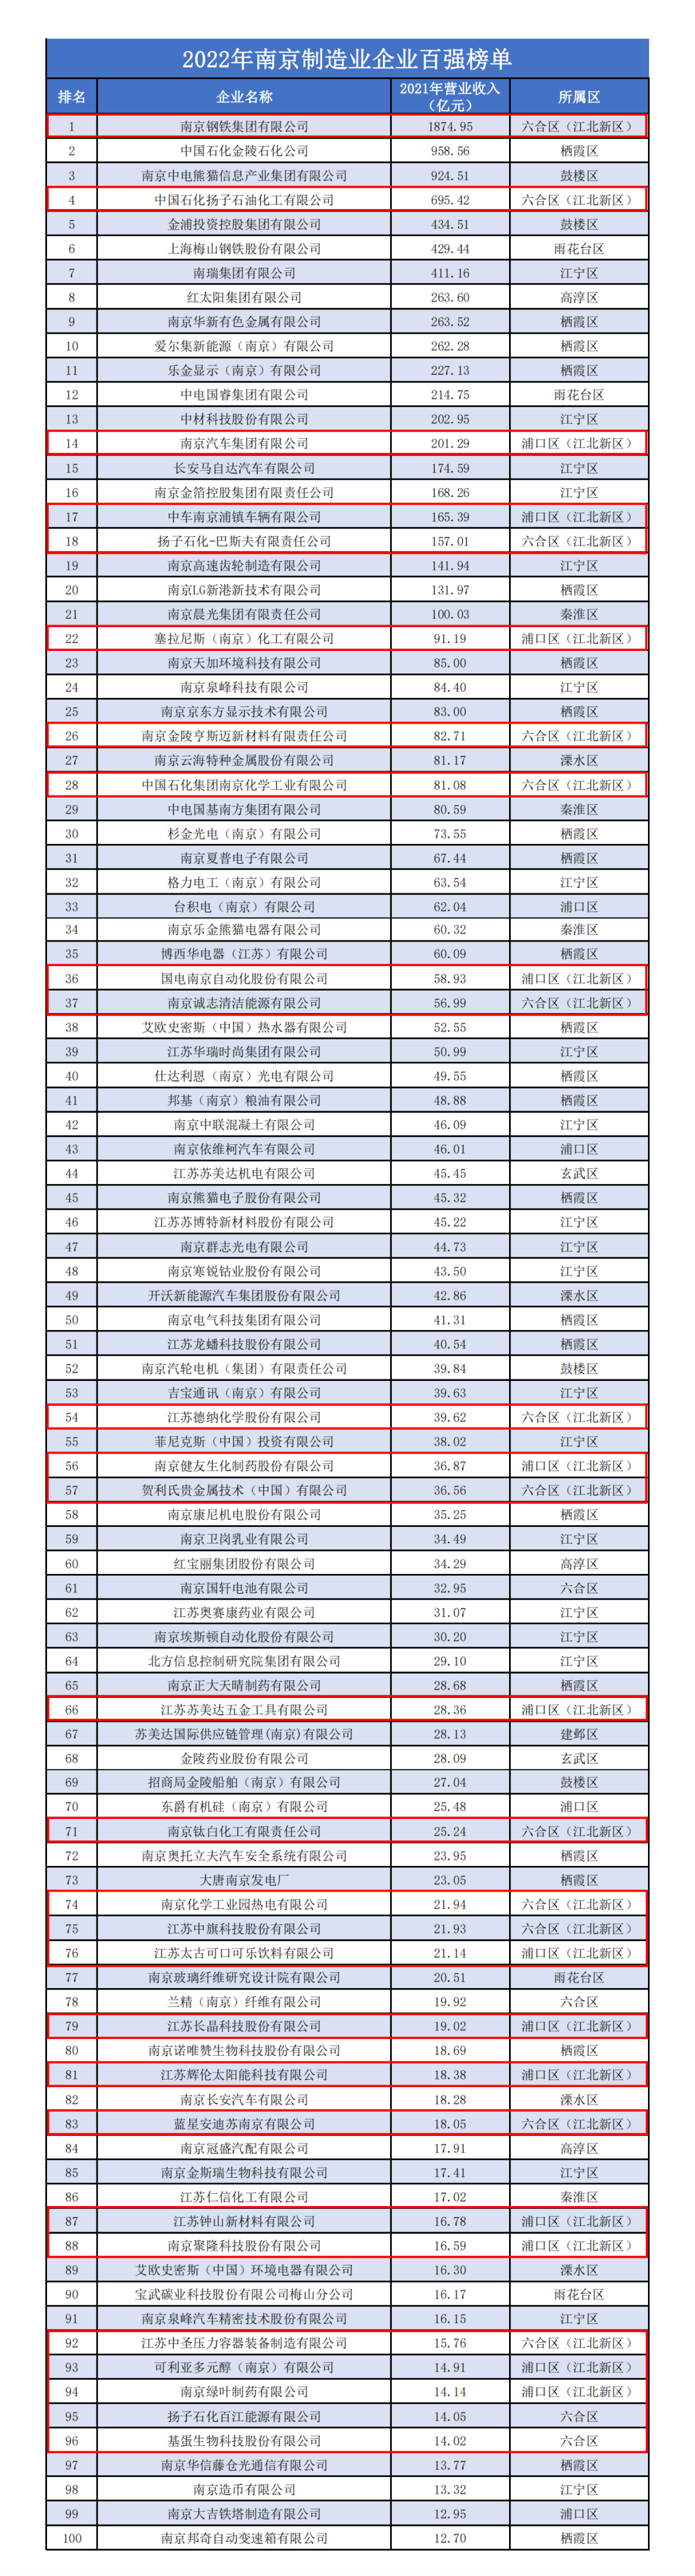 中国直销公司五百强企业排名名单_2013年中国铝工业百强企业排名_南京百强企业排名